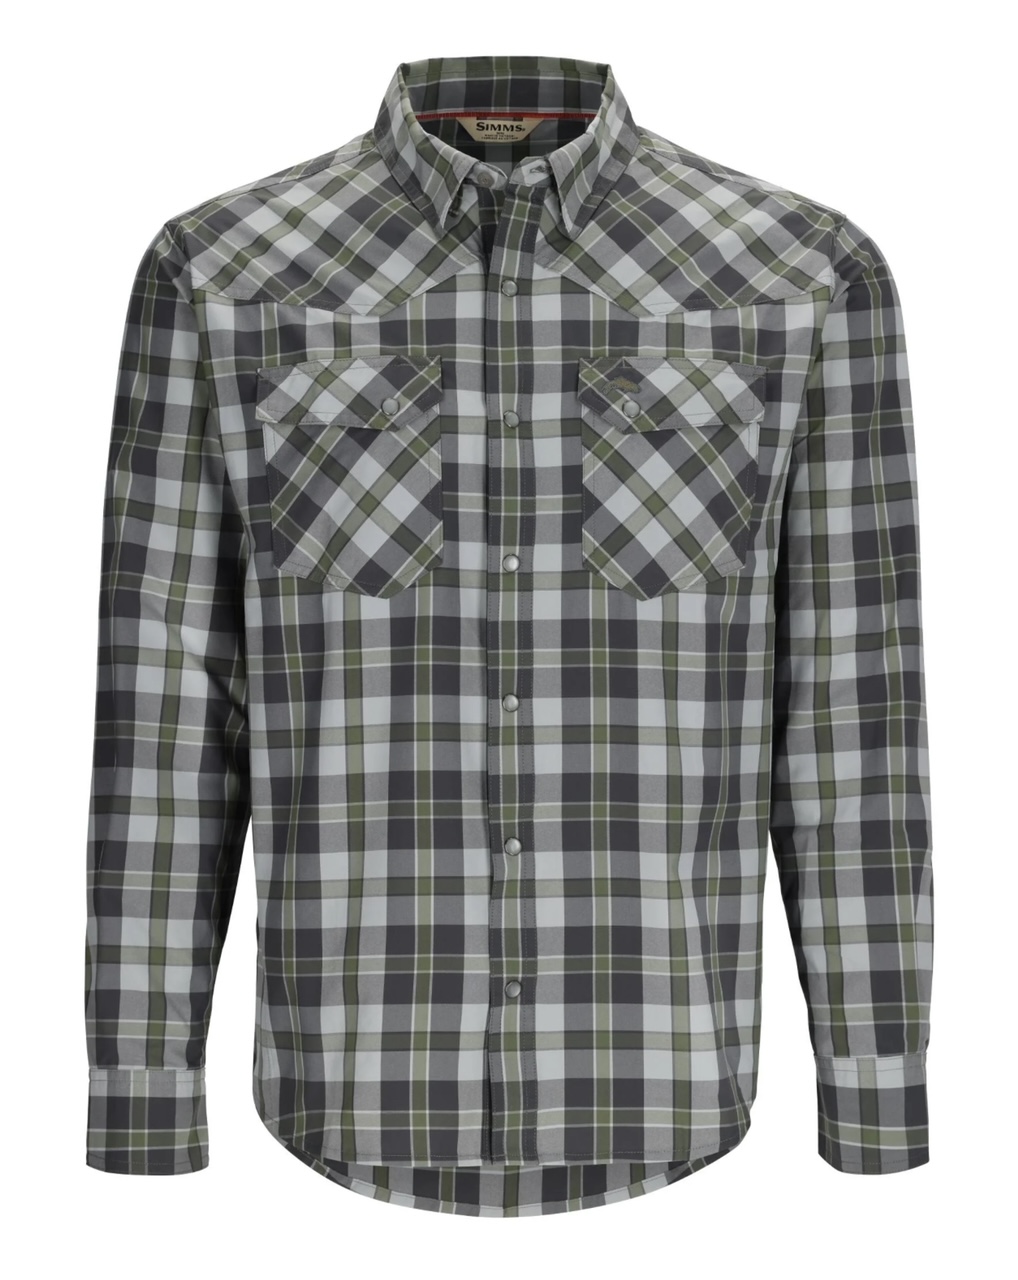 Simms M's Brackett LS Shirt - Backcountry Clover Plaid - Medium